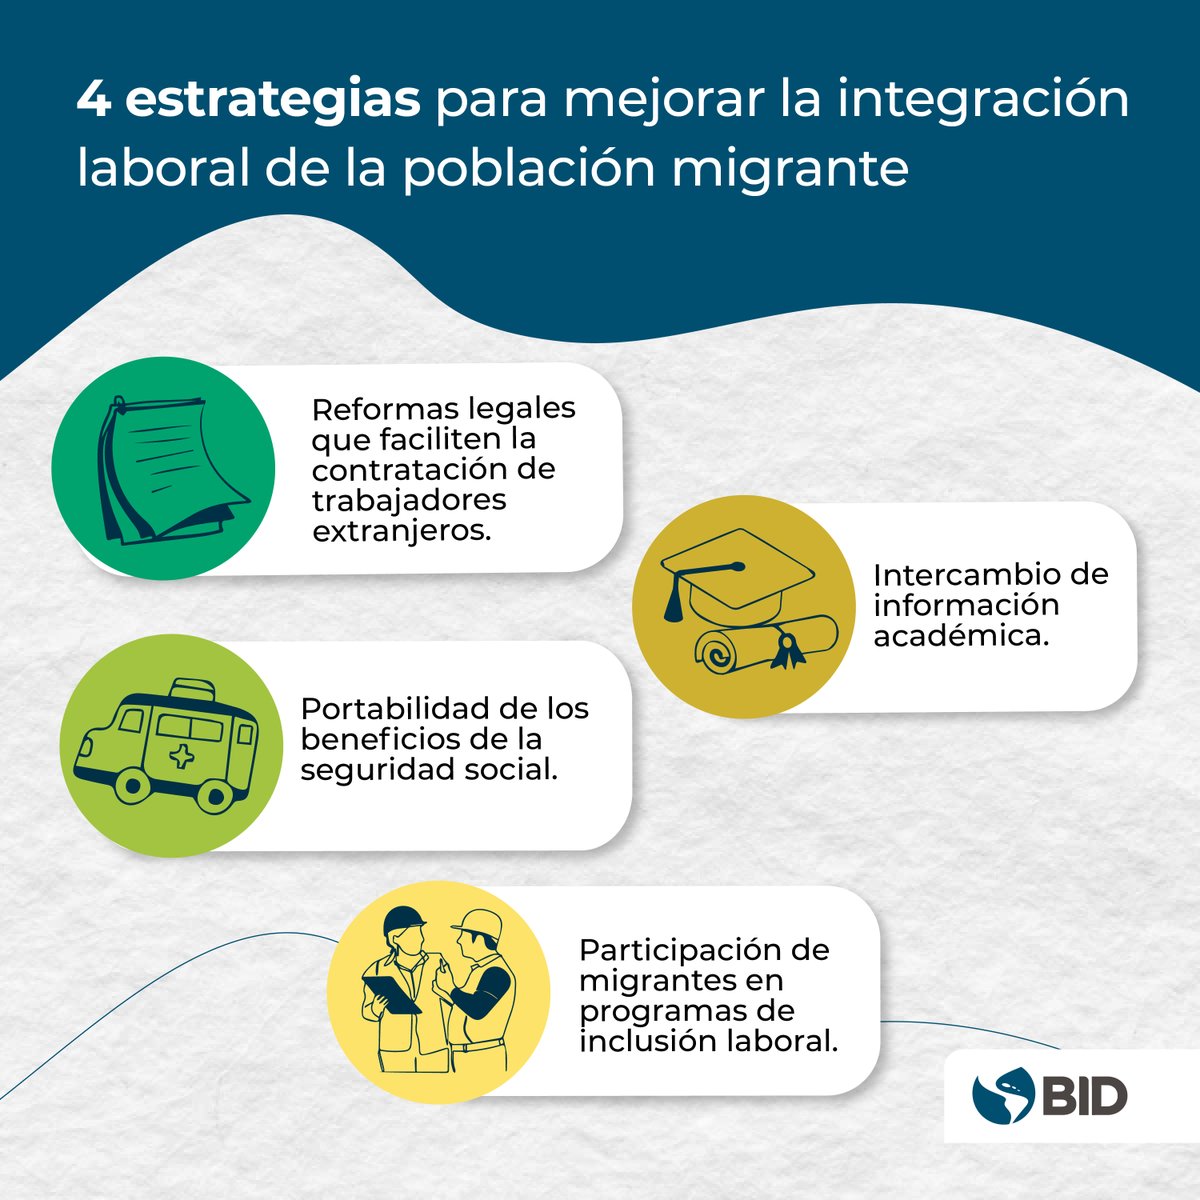 Integrar a la población migrante en el mercado de trabajo formal no es fácil, pero es posible. Descubre cómo en esta nueva publicación. 👇 bit.ly/49YlfcG